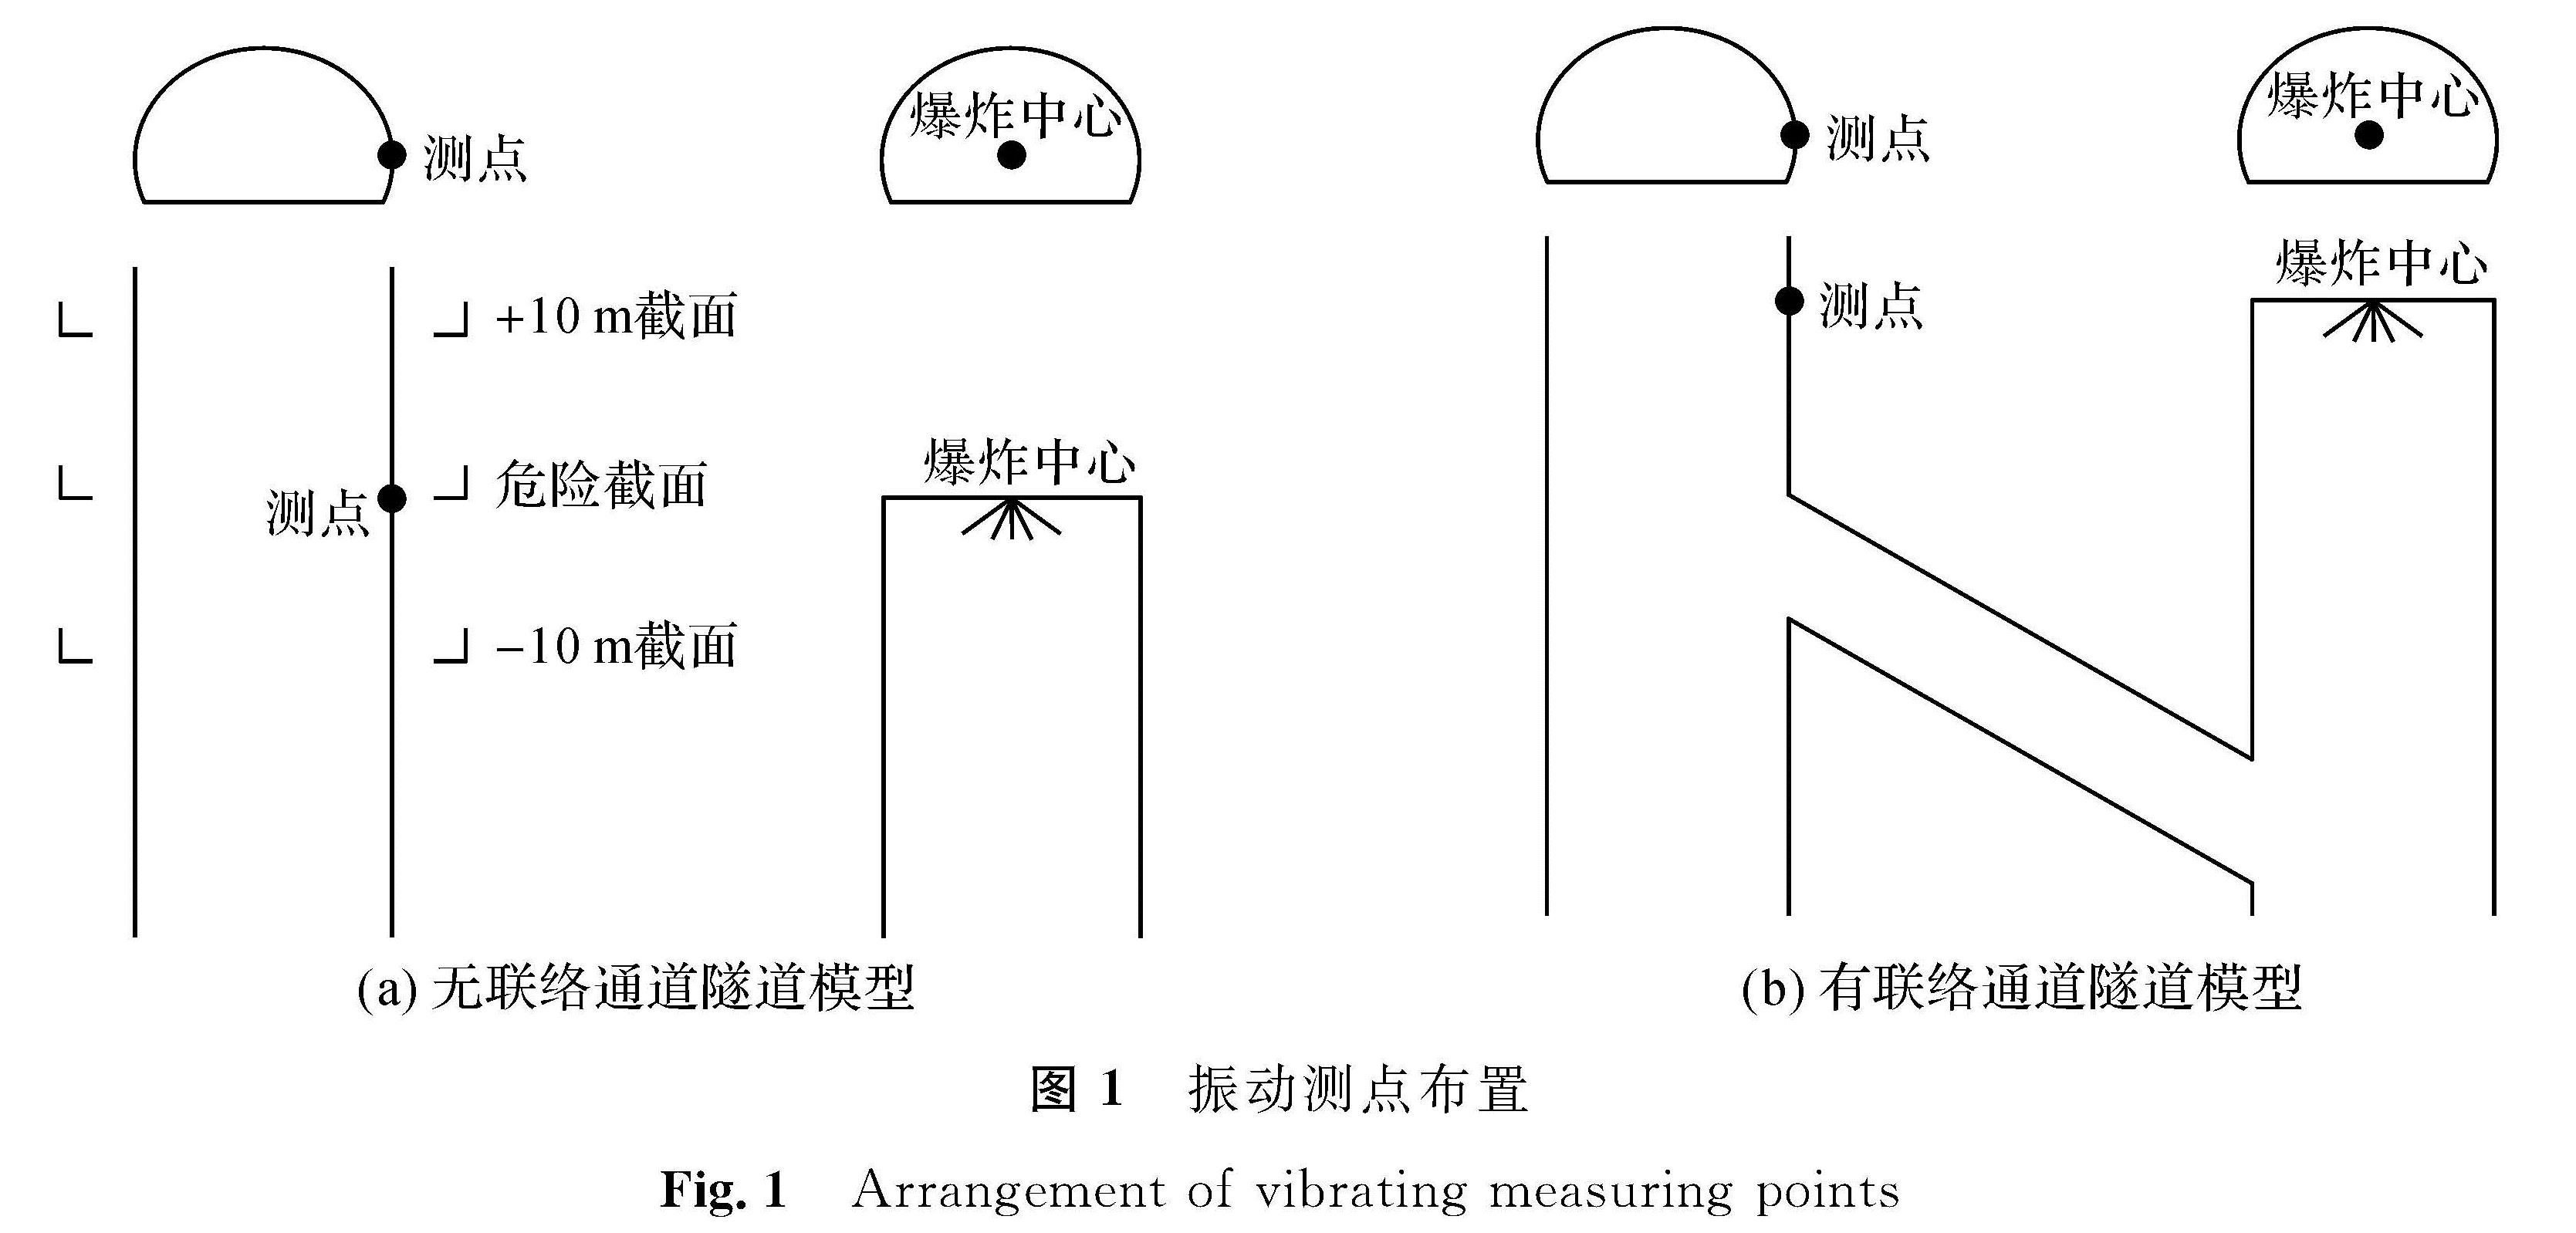 图1 振动测点布置<br/>Fig.1 Arrangement of vibrating measuring points